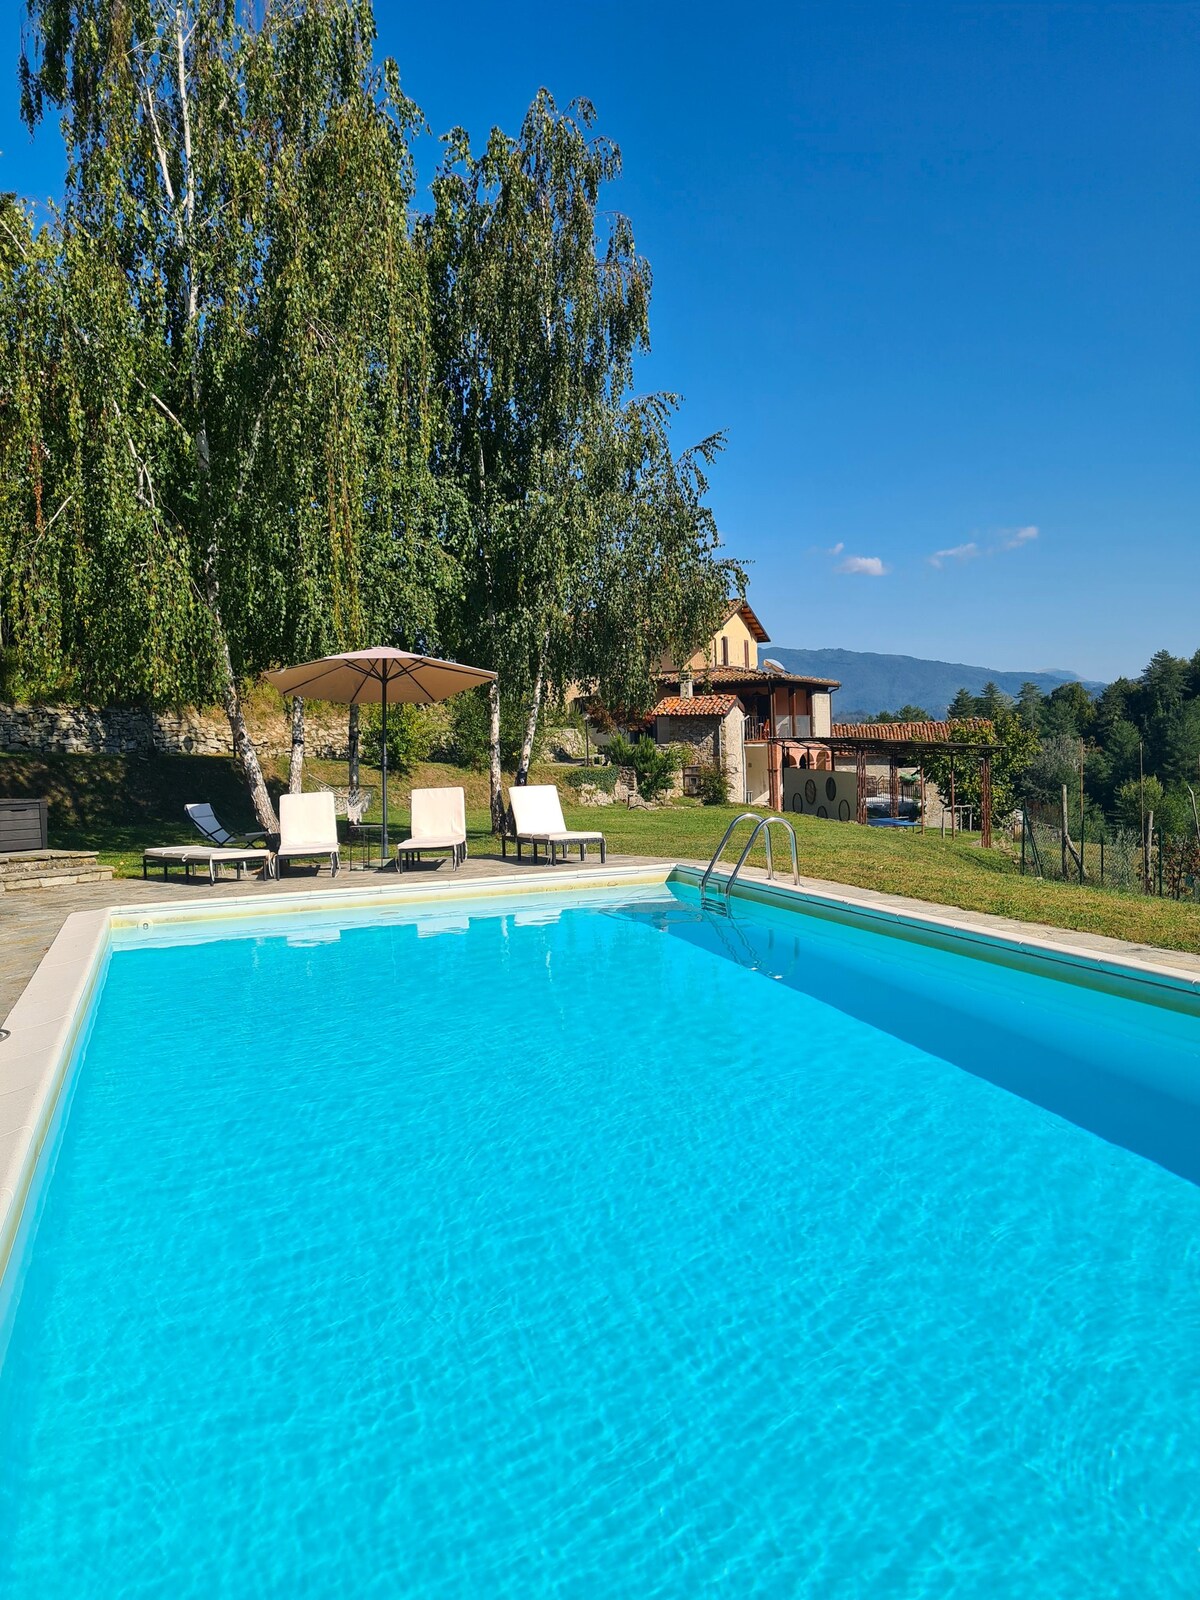 Castello - Vineyard Villa with Private Pool